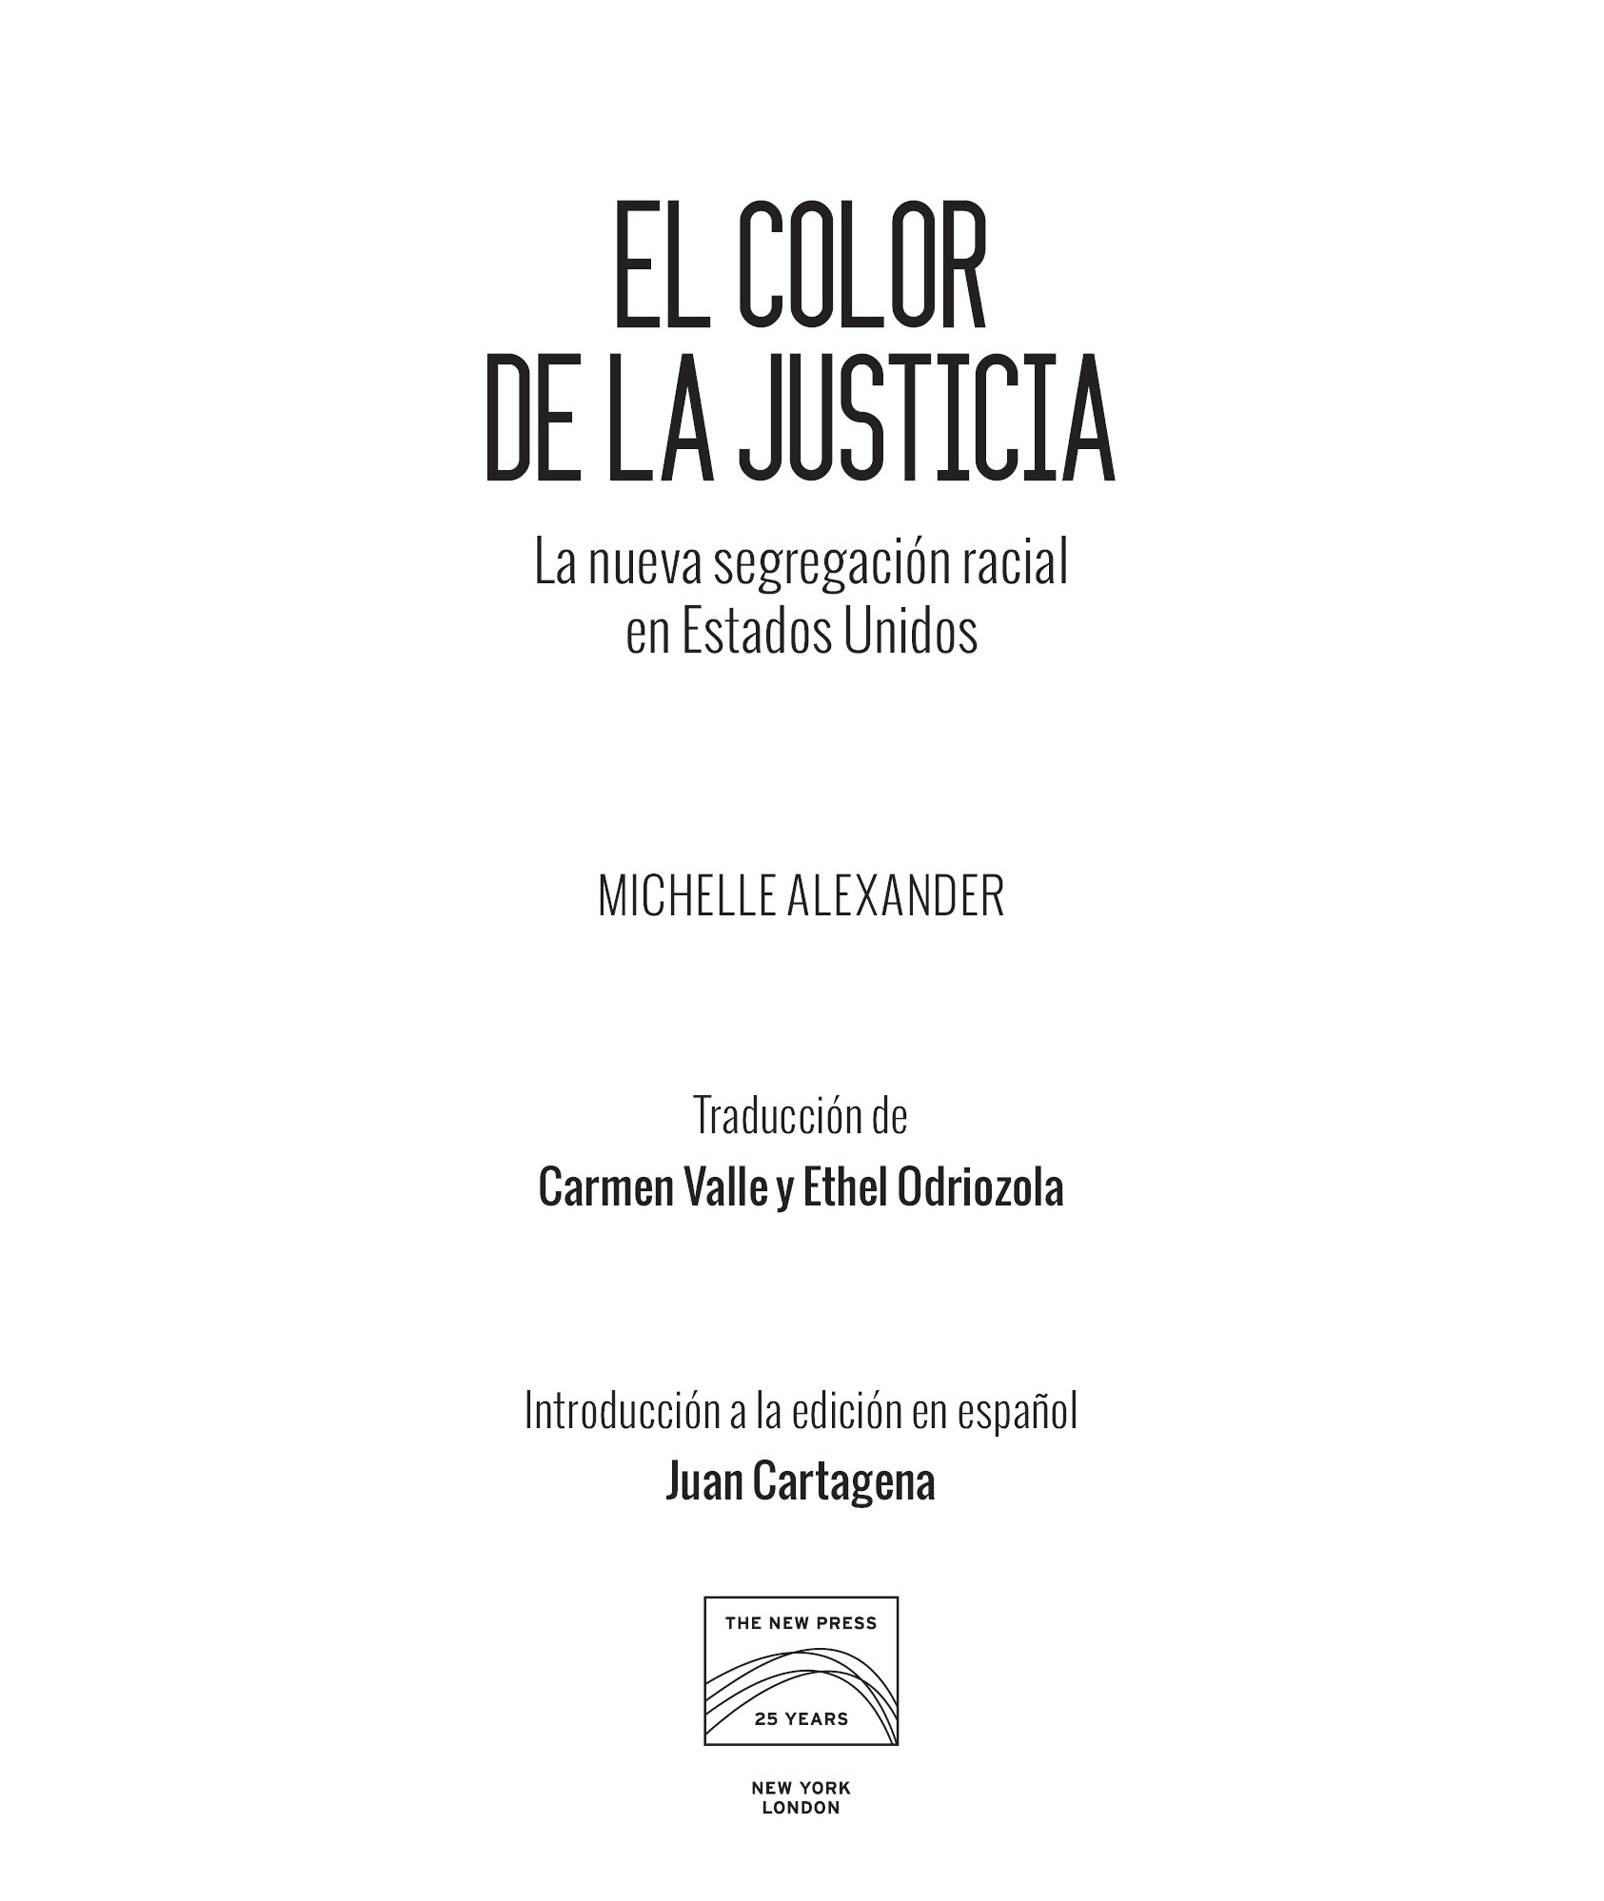 2010 2012 2017 Michelle Alexander Introducción a la edición en español - photo 2